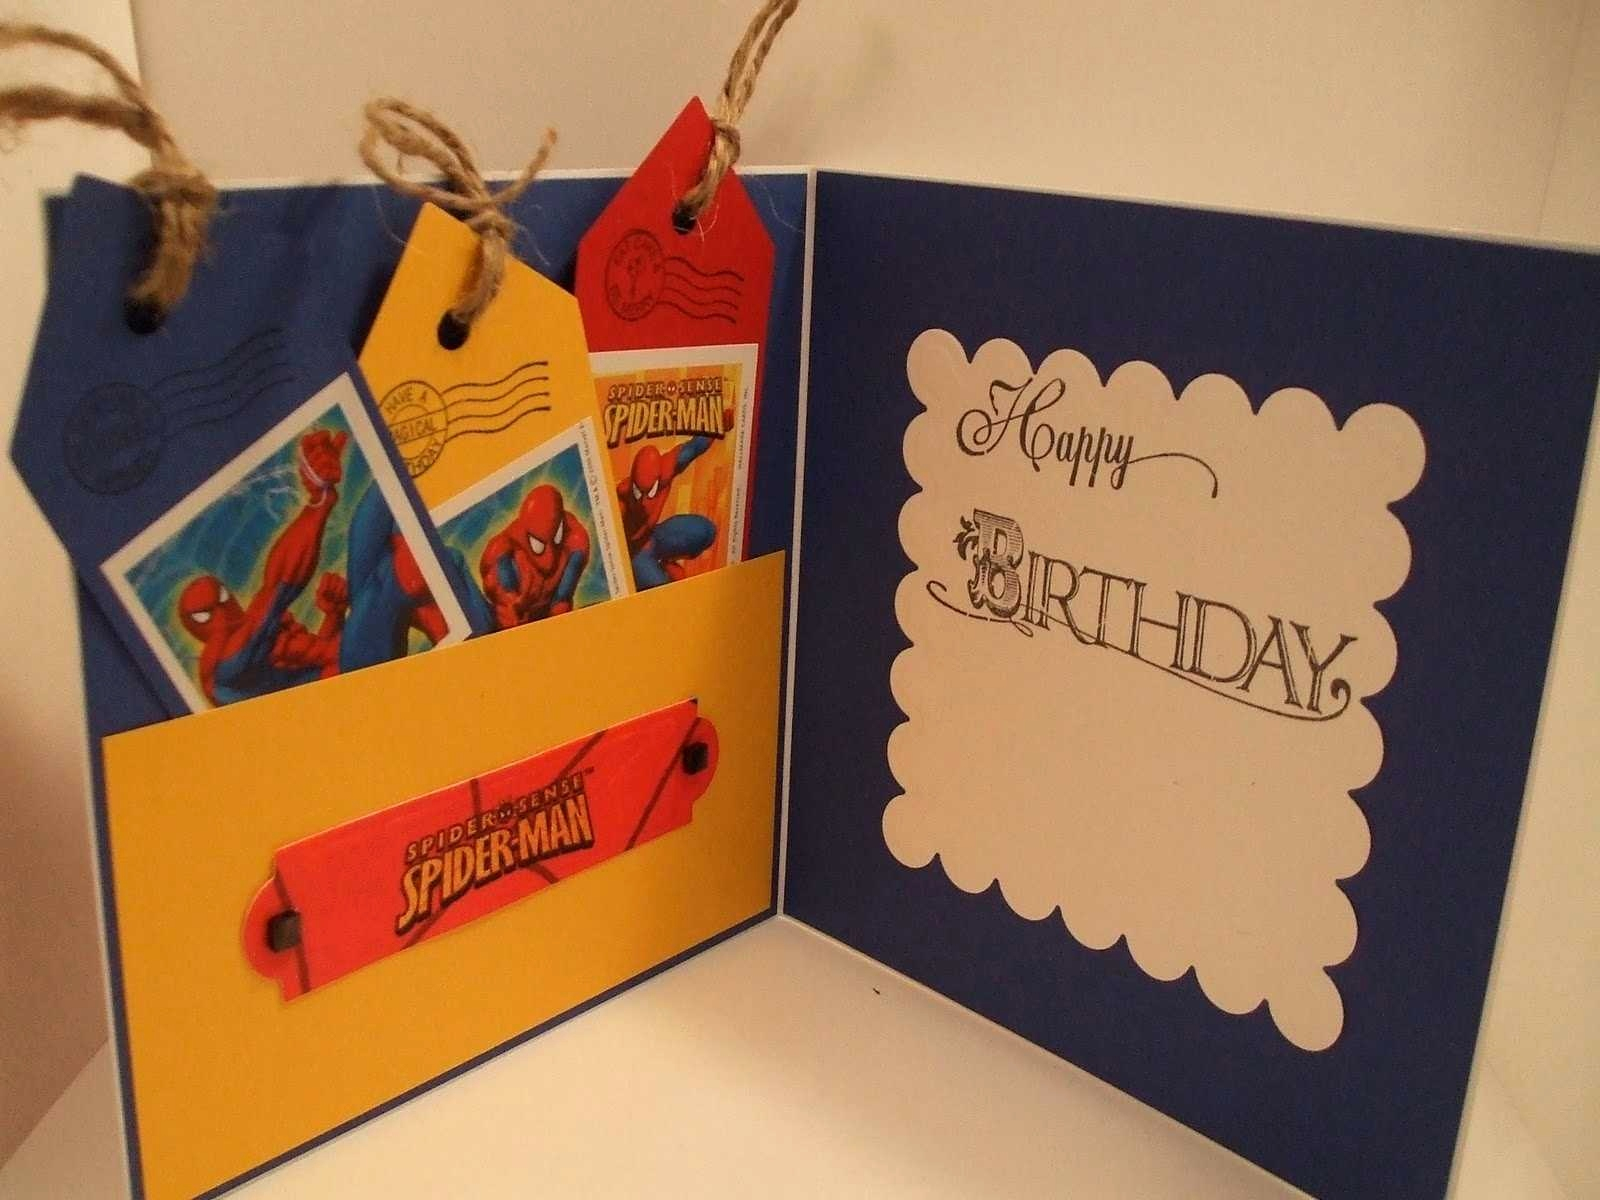 Creative Ideas For A Birthday Card Creative Handmade Birthday Card Ideas For Boyfriend How To Make